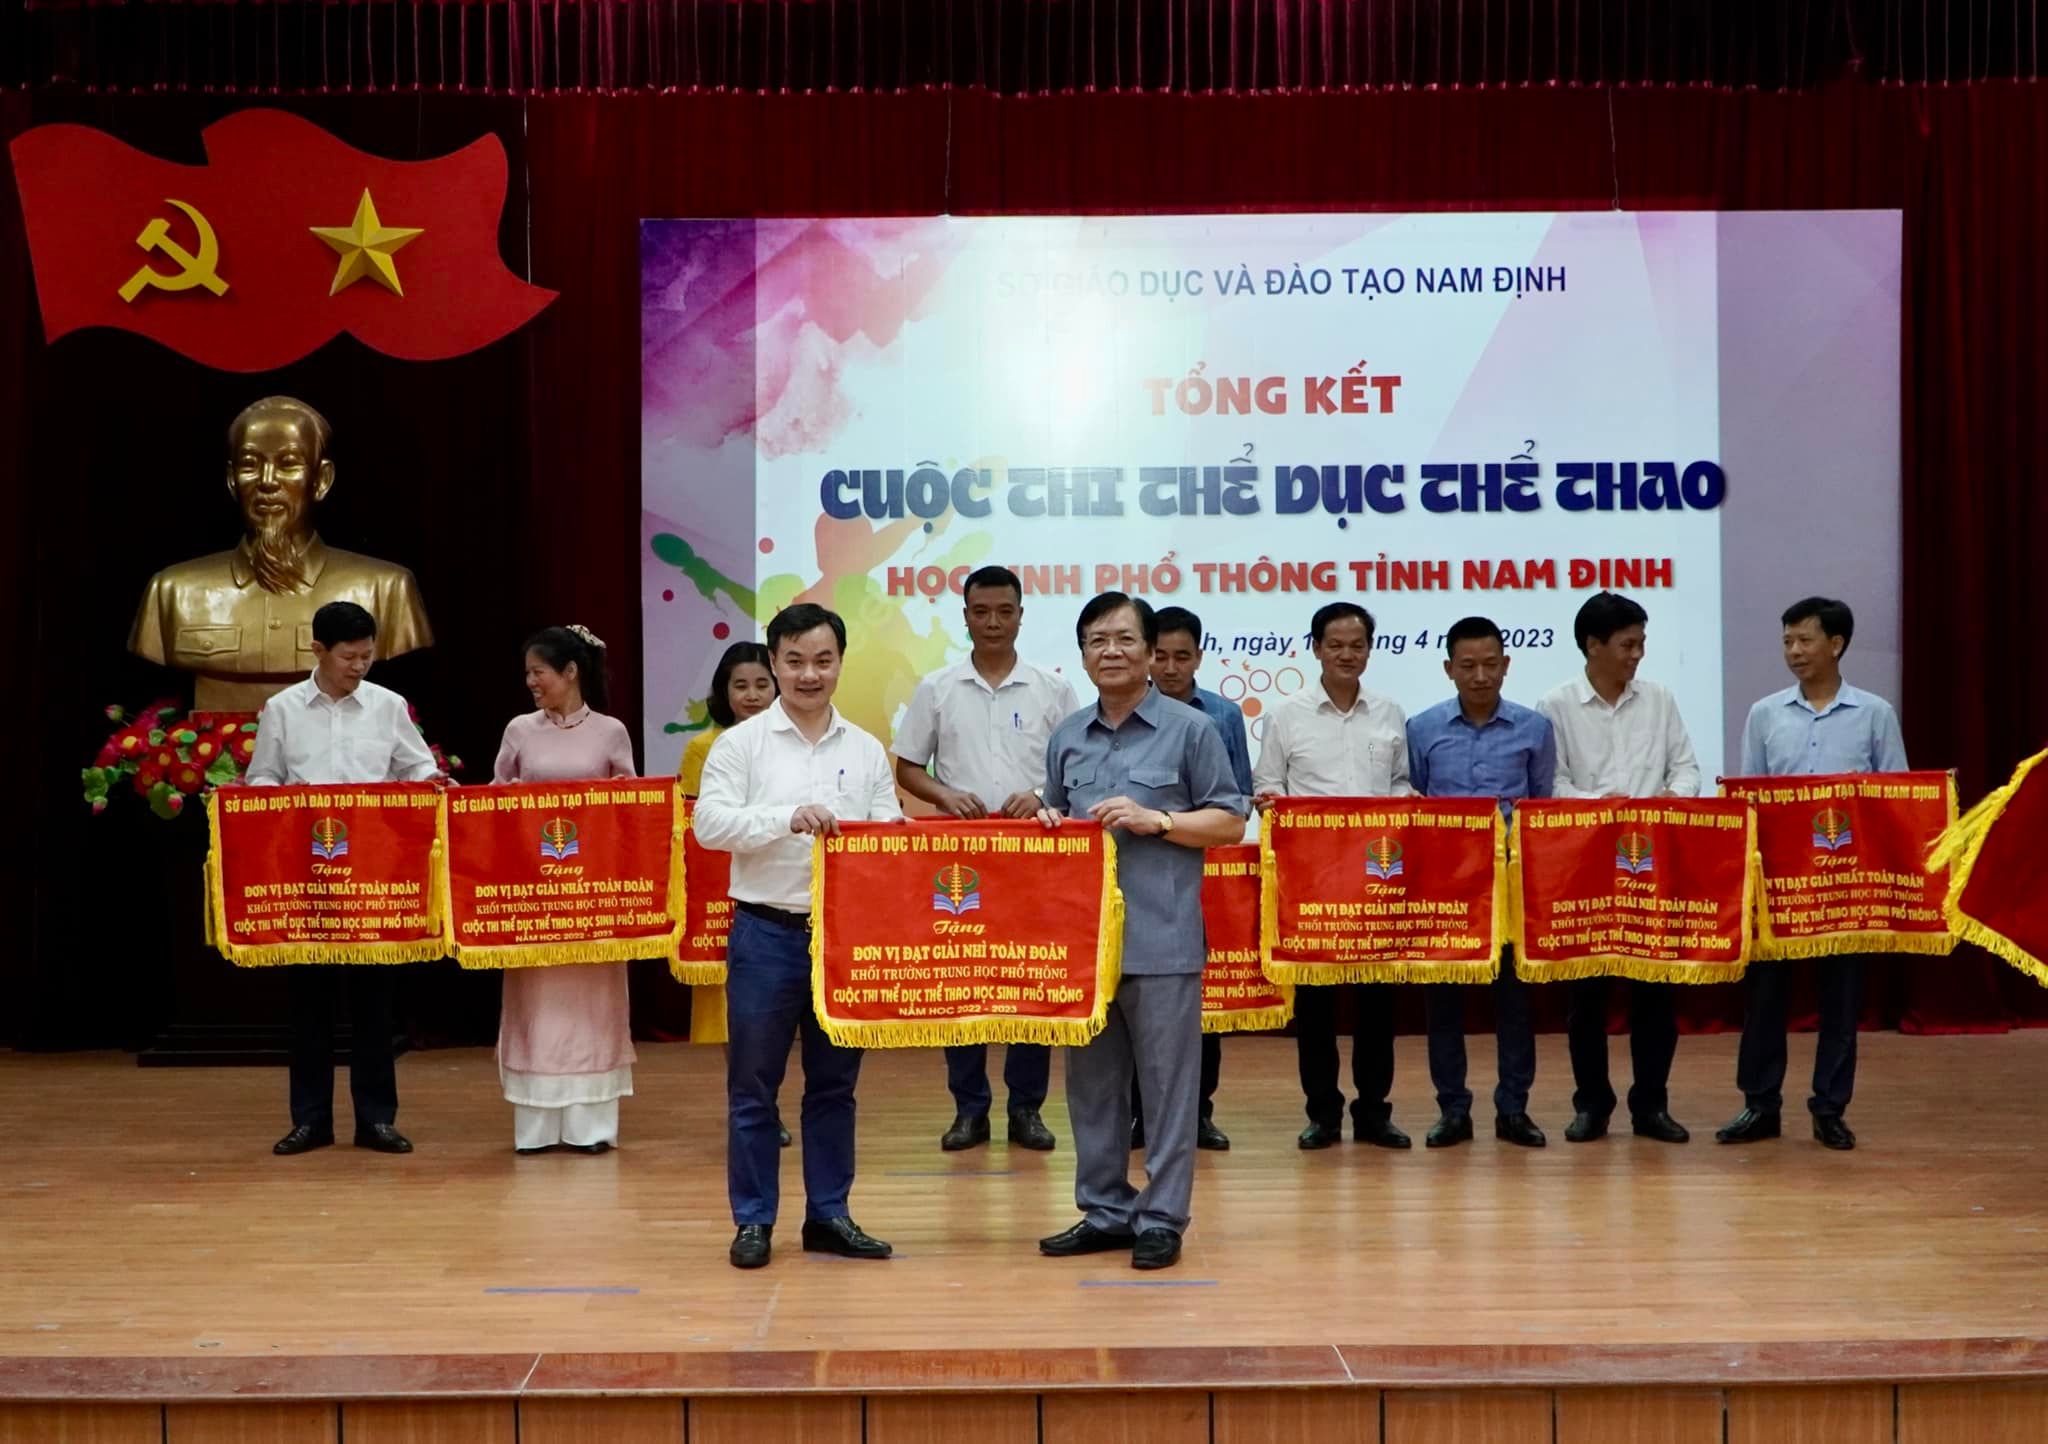 Trường THPT chuyên Lê Hồng Phong đạt thành tích xuất sắc trong Cuộc thi Thể dục Thể thao tỉnh Nam Định